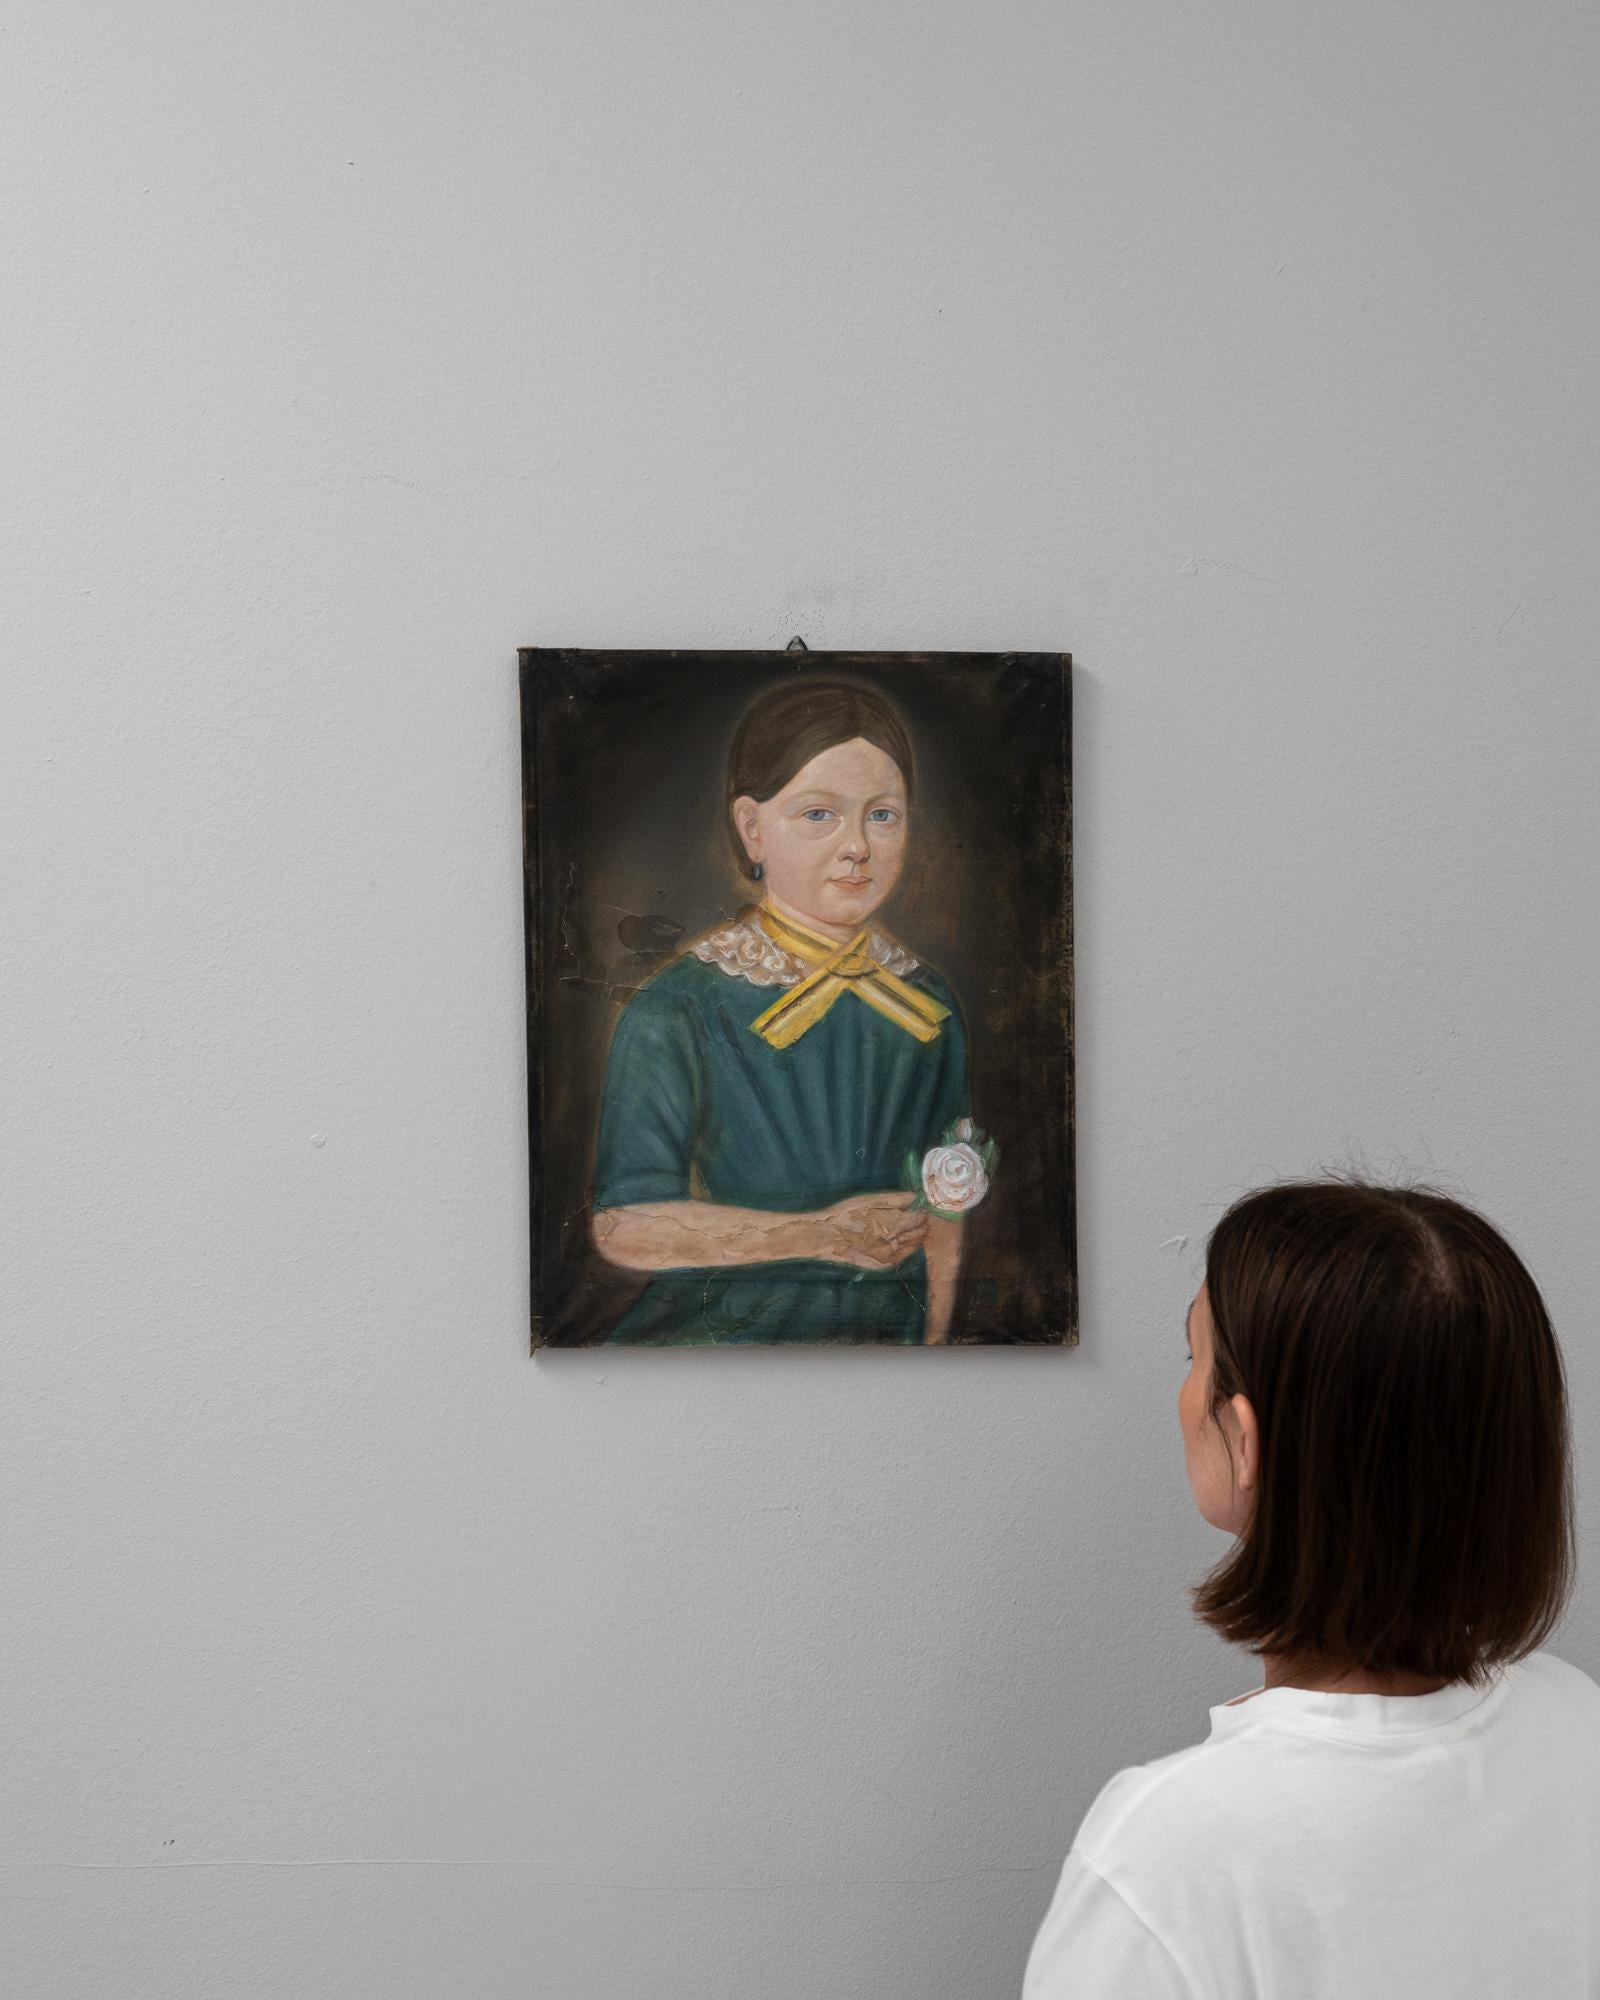 Cette peinture belge du début du 20e siècle capture l'essence d'une époque révolue à travers la représentation détaillée d'une jeune fille. Le sujet, vêtu d'une robe traditionnelle verte avec des bordures jaunes et tenant un petit bouquet de fleurs,